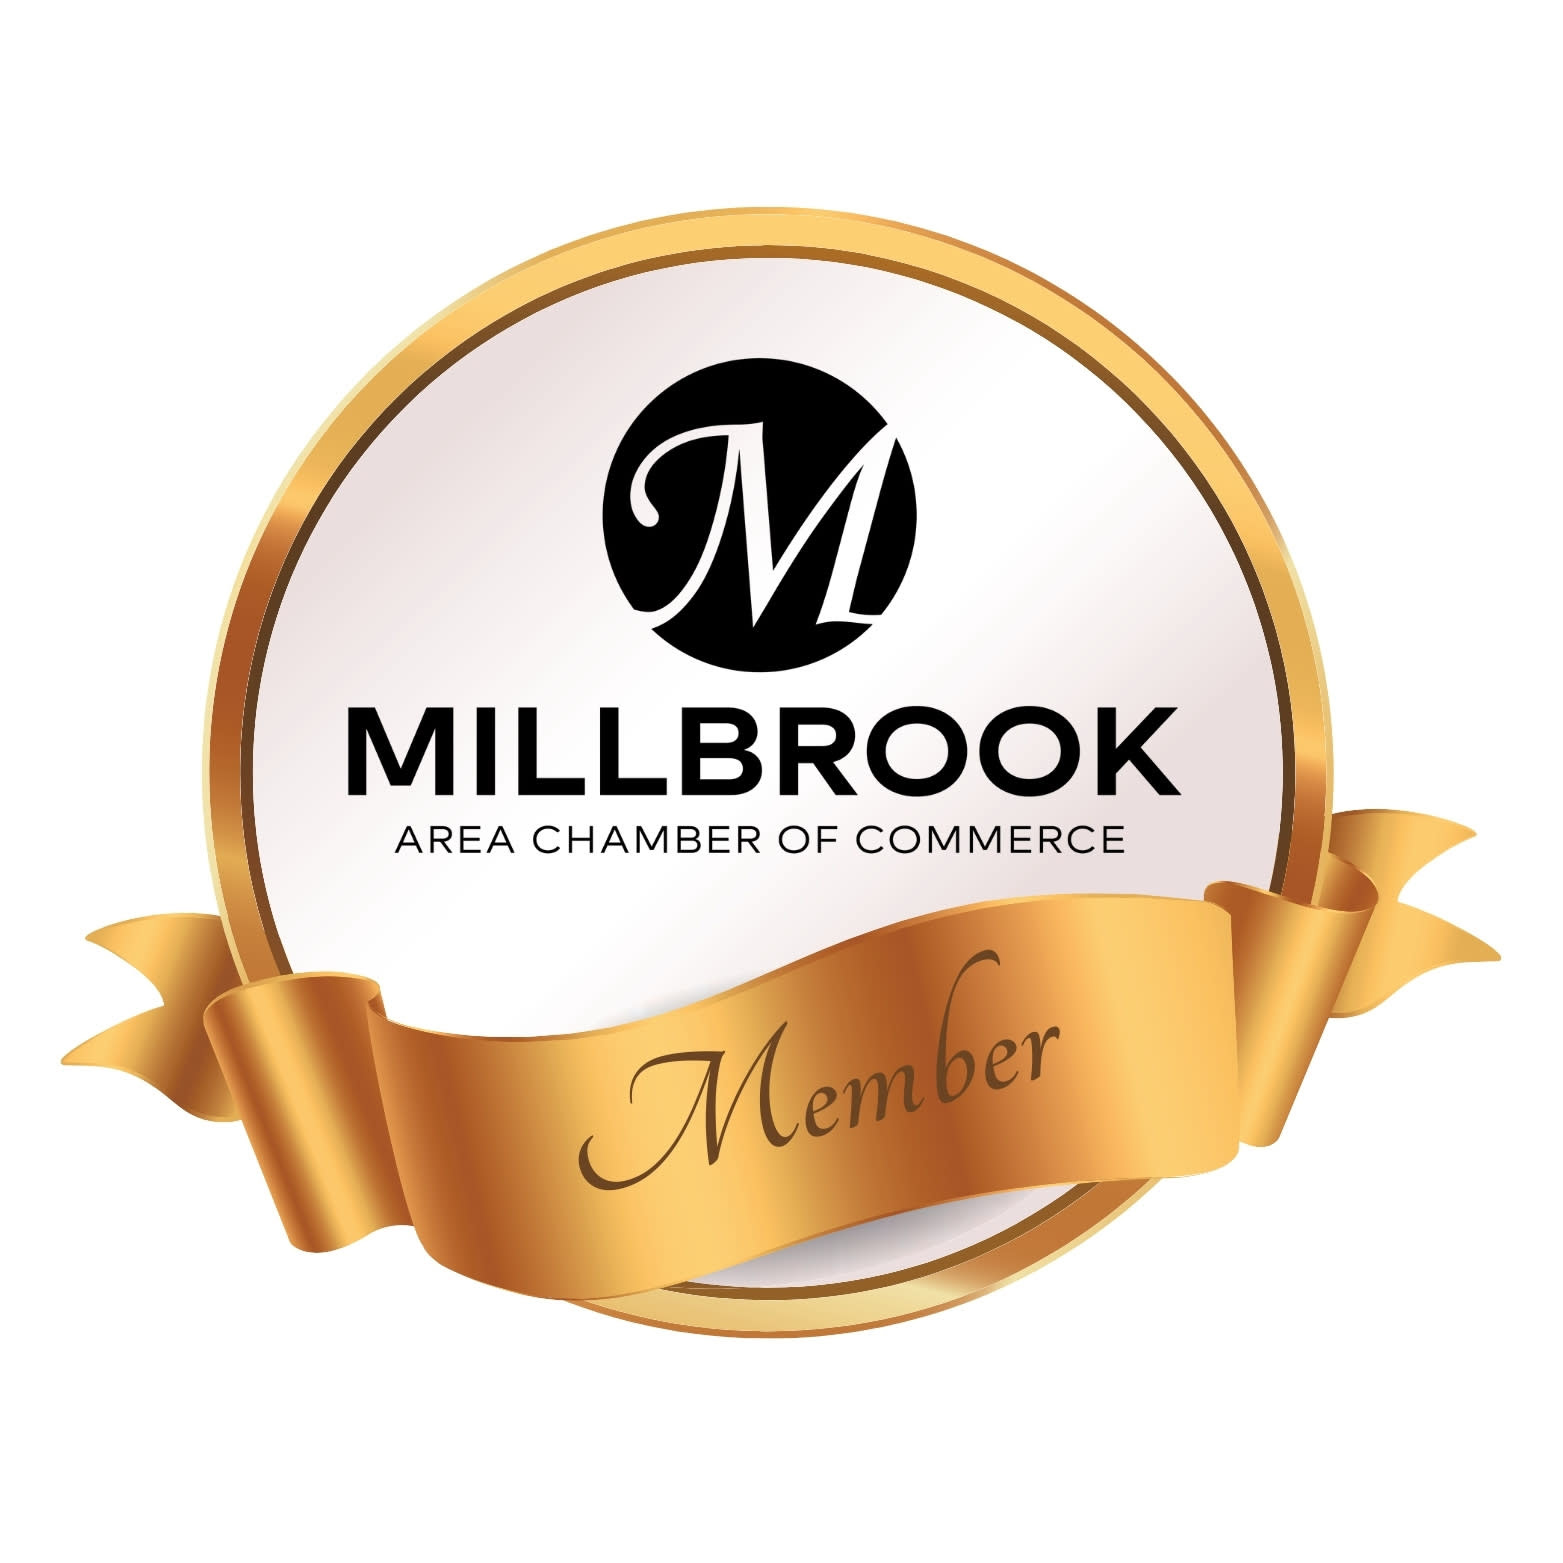 Millbrook Chamber of Commerce logo